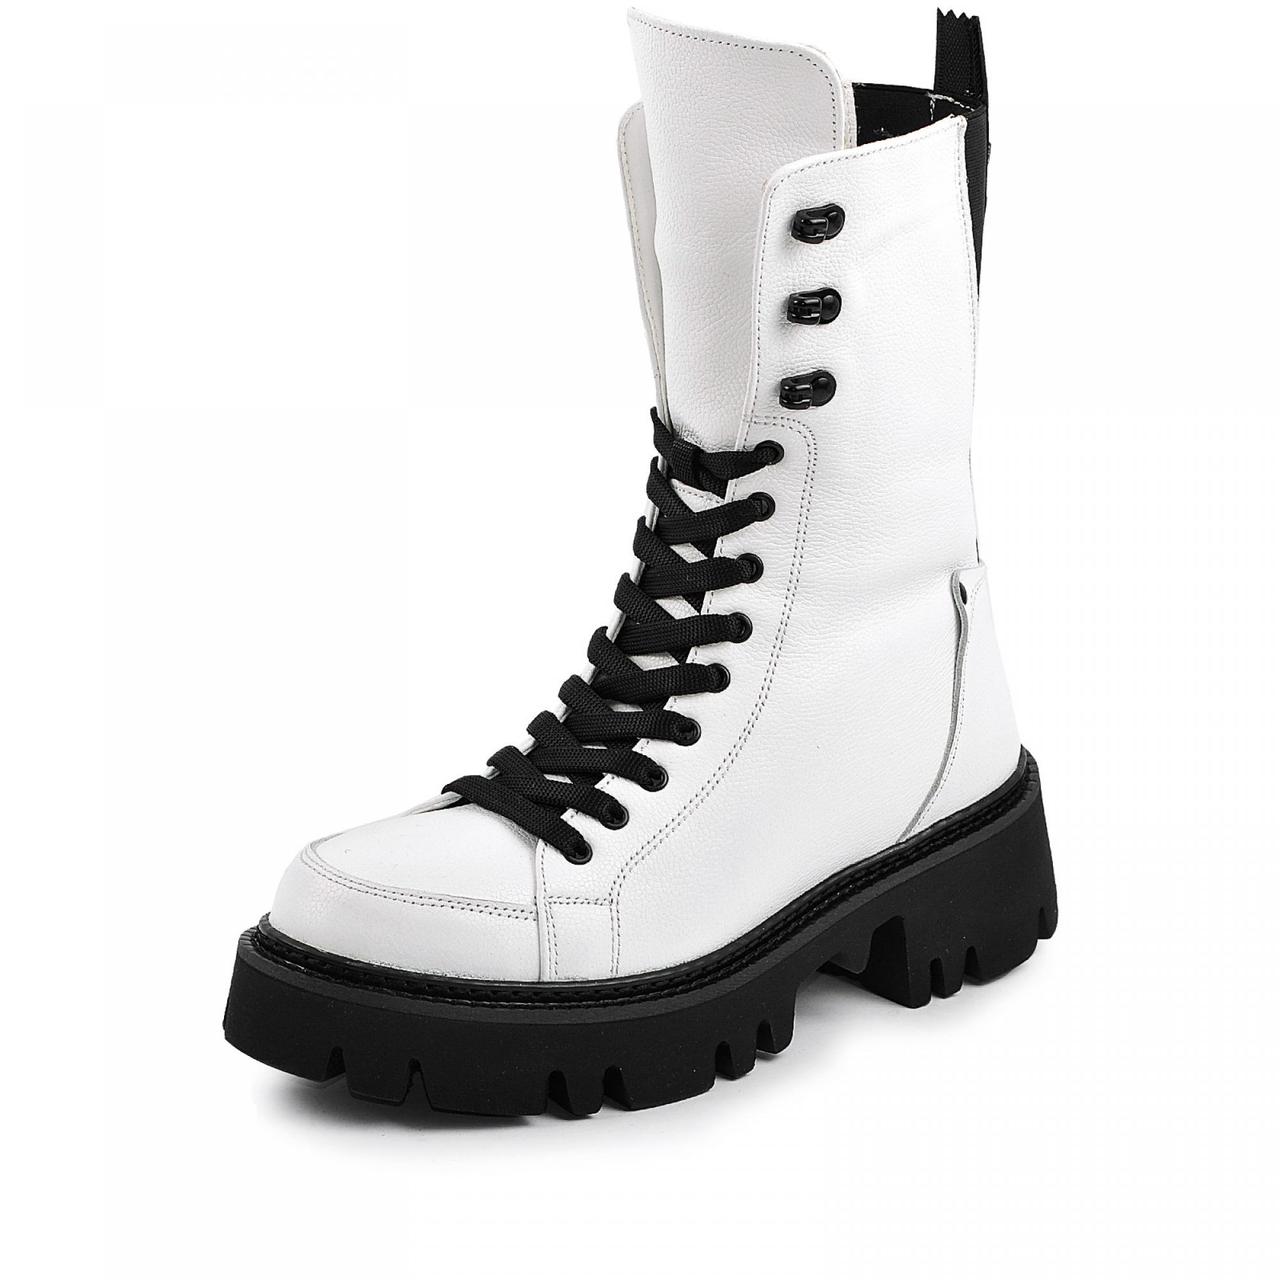 Розмір 40 - устілка 26 сантиметрів  Зимові жіночі шкіряні чоботи на хутрі, на платформі, білі